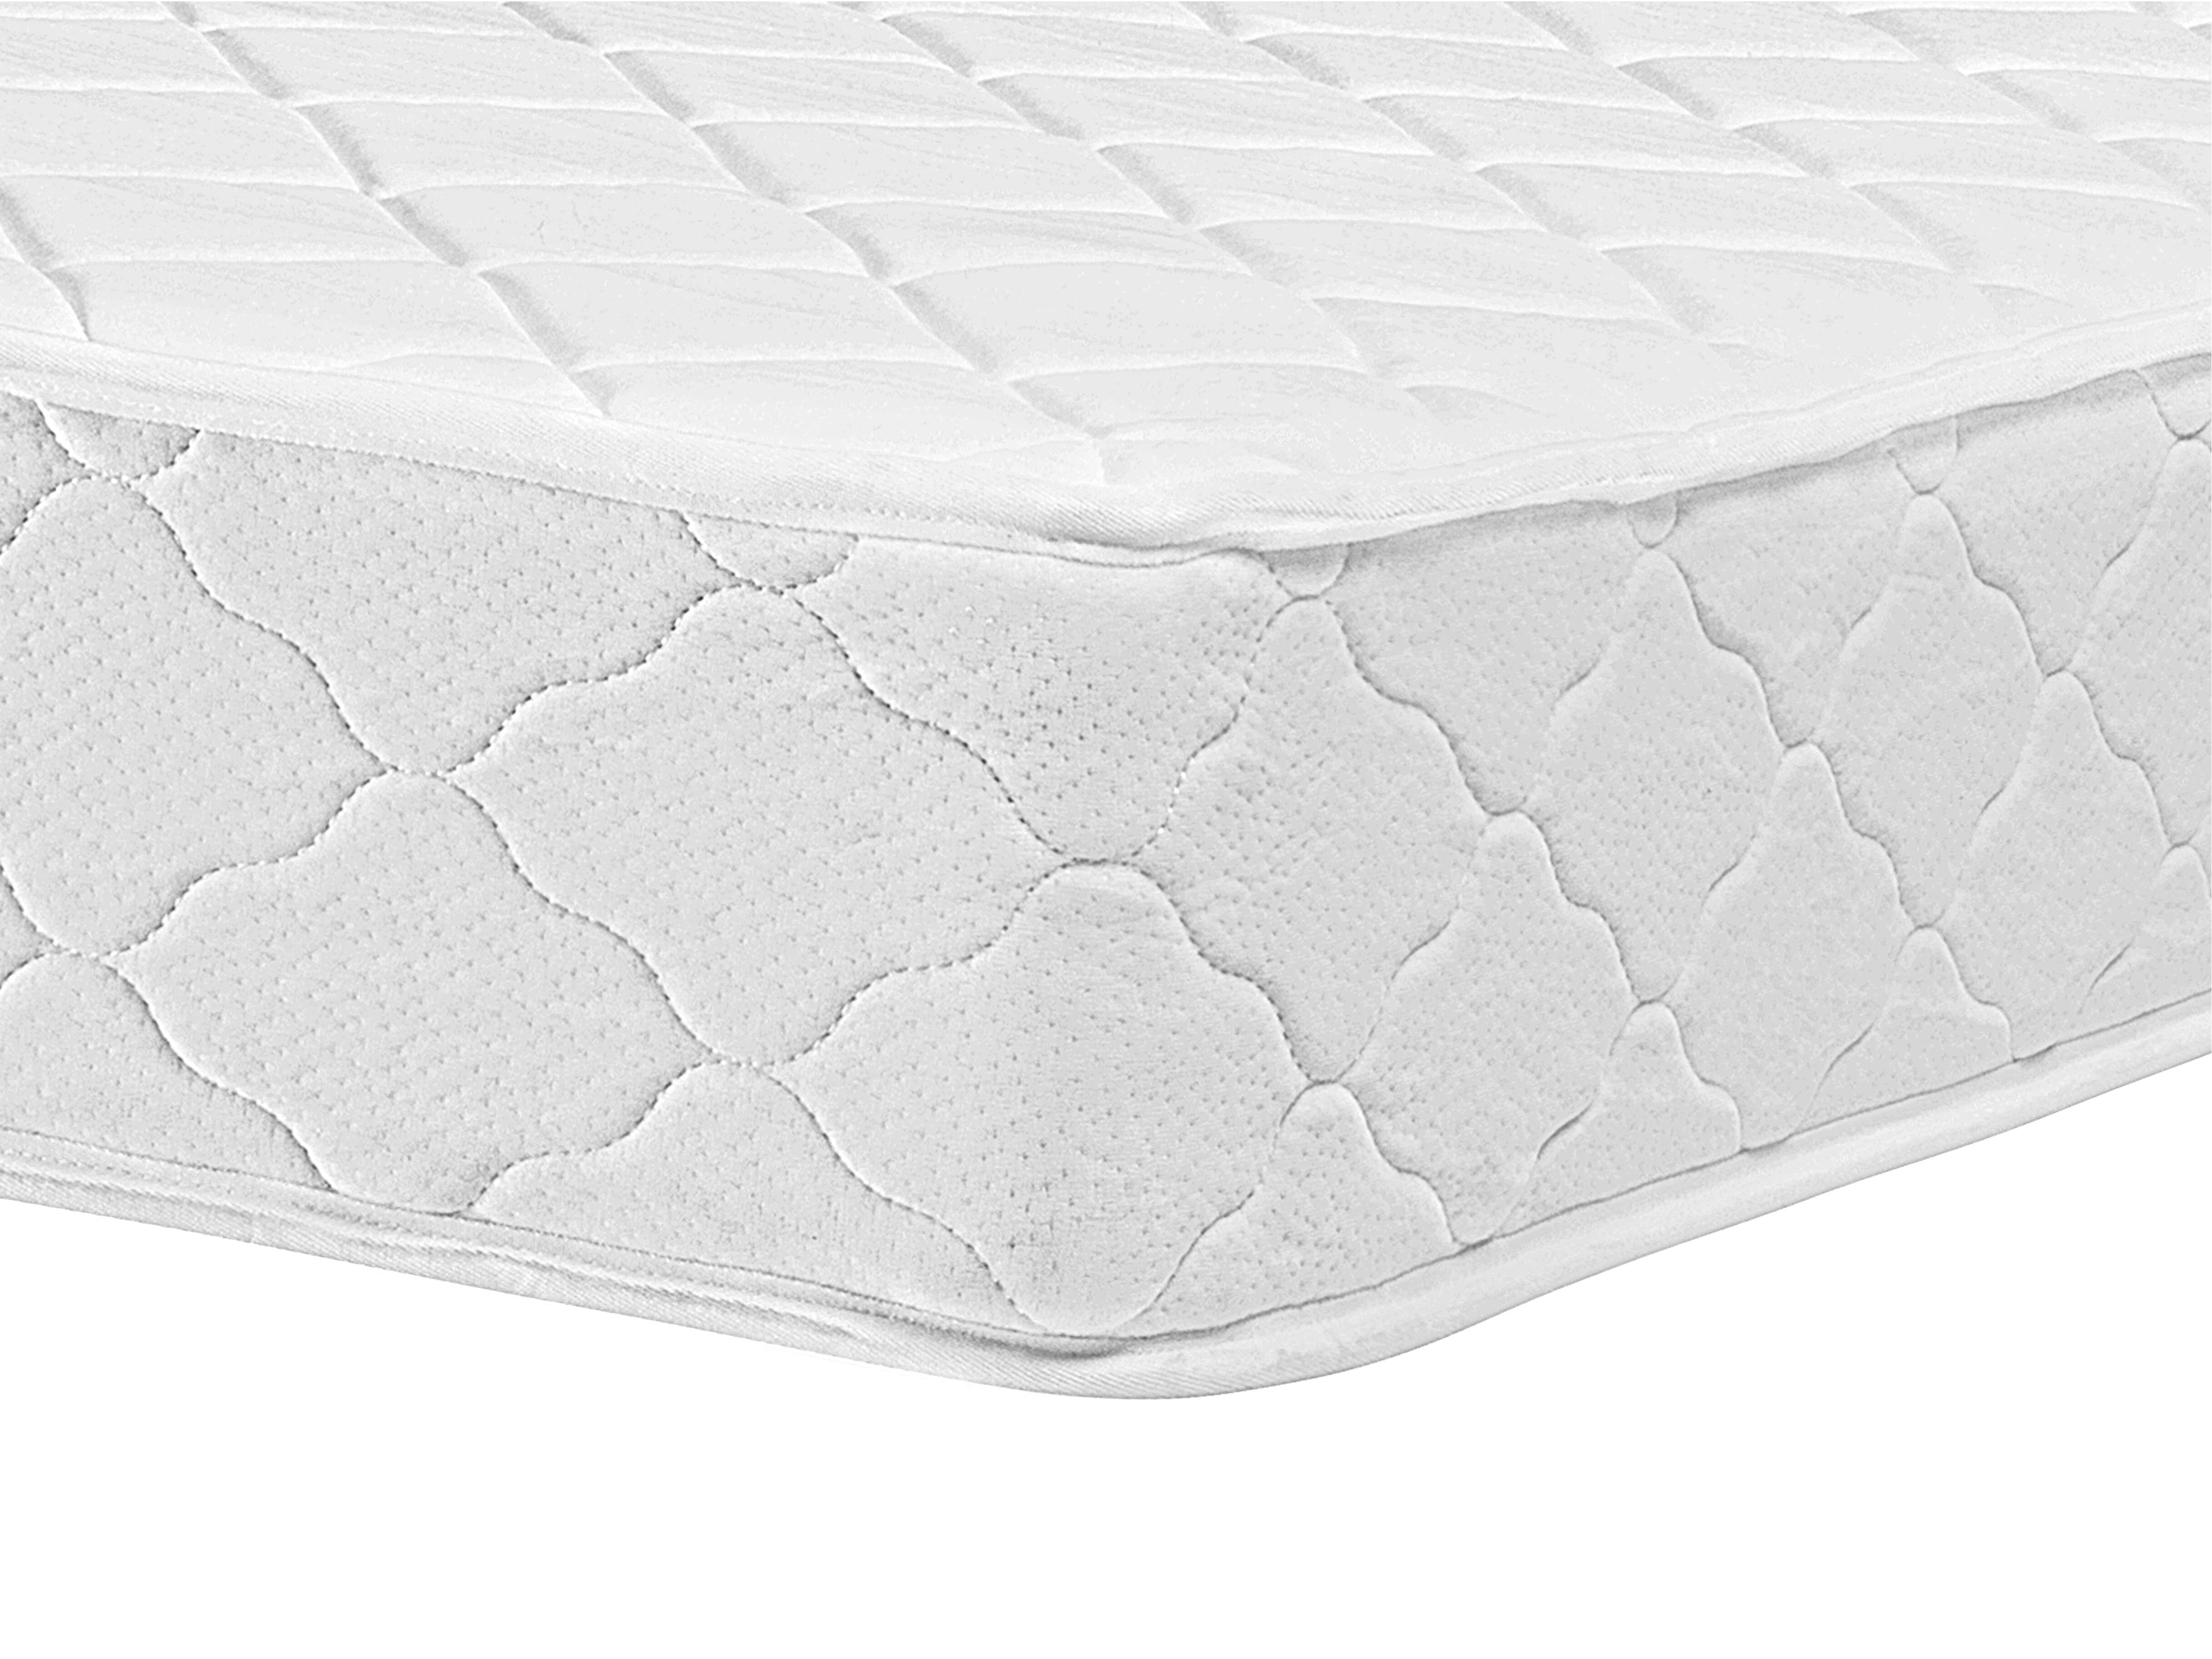 mattress firm sheet bundle